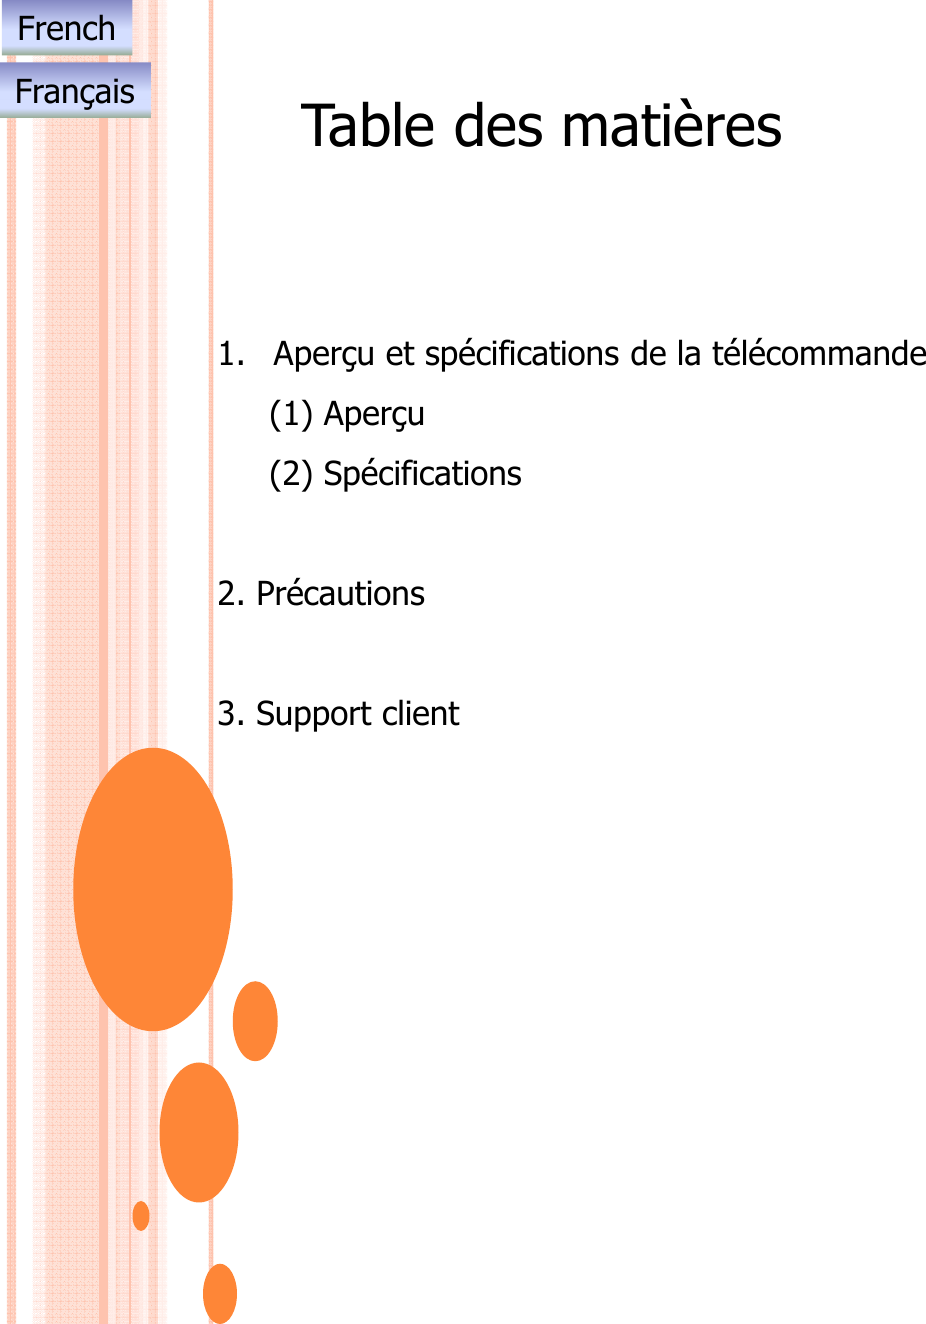 Table des matières1. Aperçu et spécifications de la télécommande(1) Aperçu(2) Spécifications2. Précautions3. Support clientFrenchFrançais